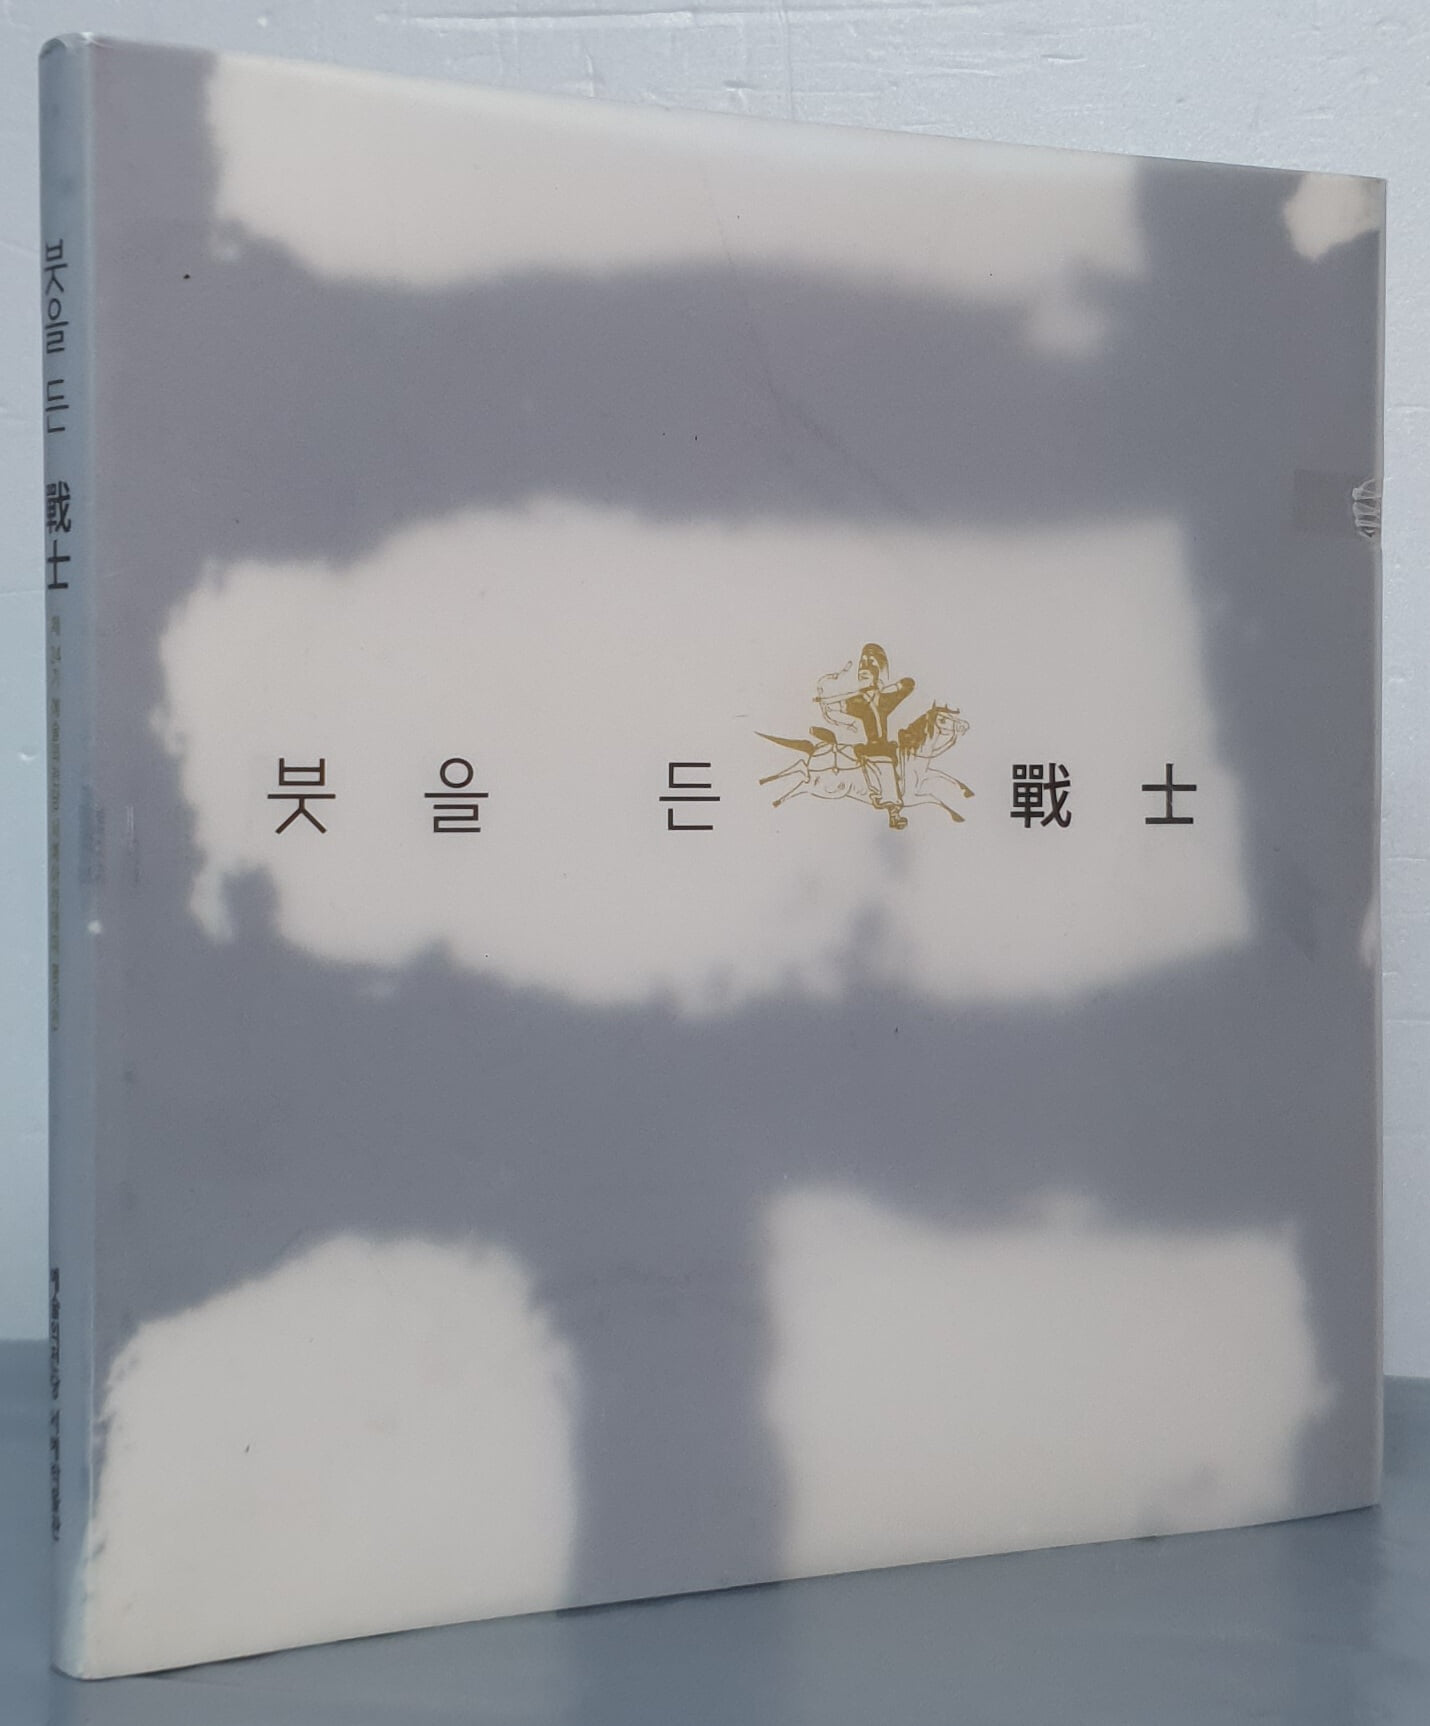 붓을 든 전사 - 광개토대왕 붕어 1600주년기념 2012 제24기 예술의전당 서예아카데미 평가전 도록 